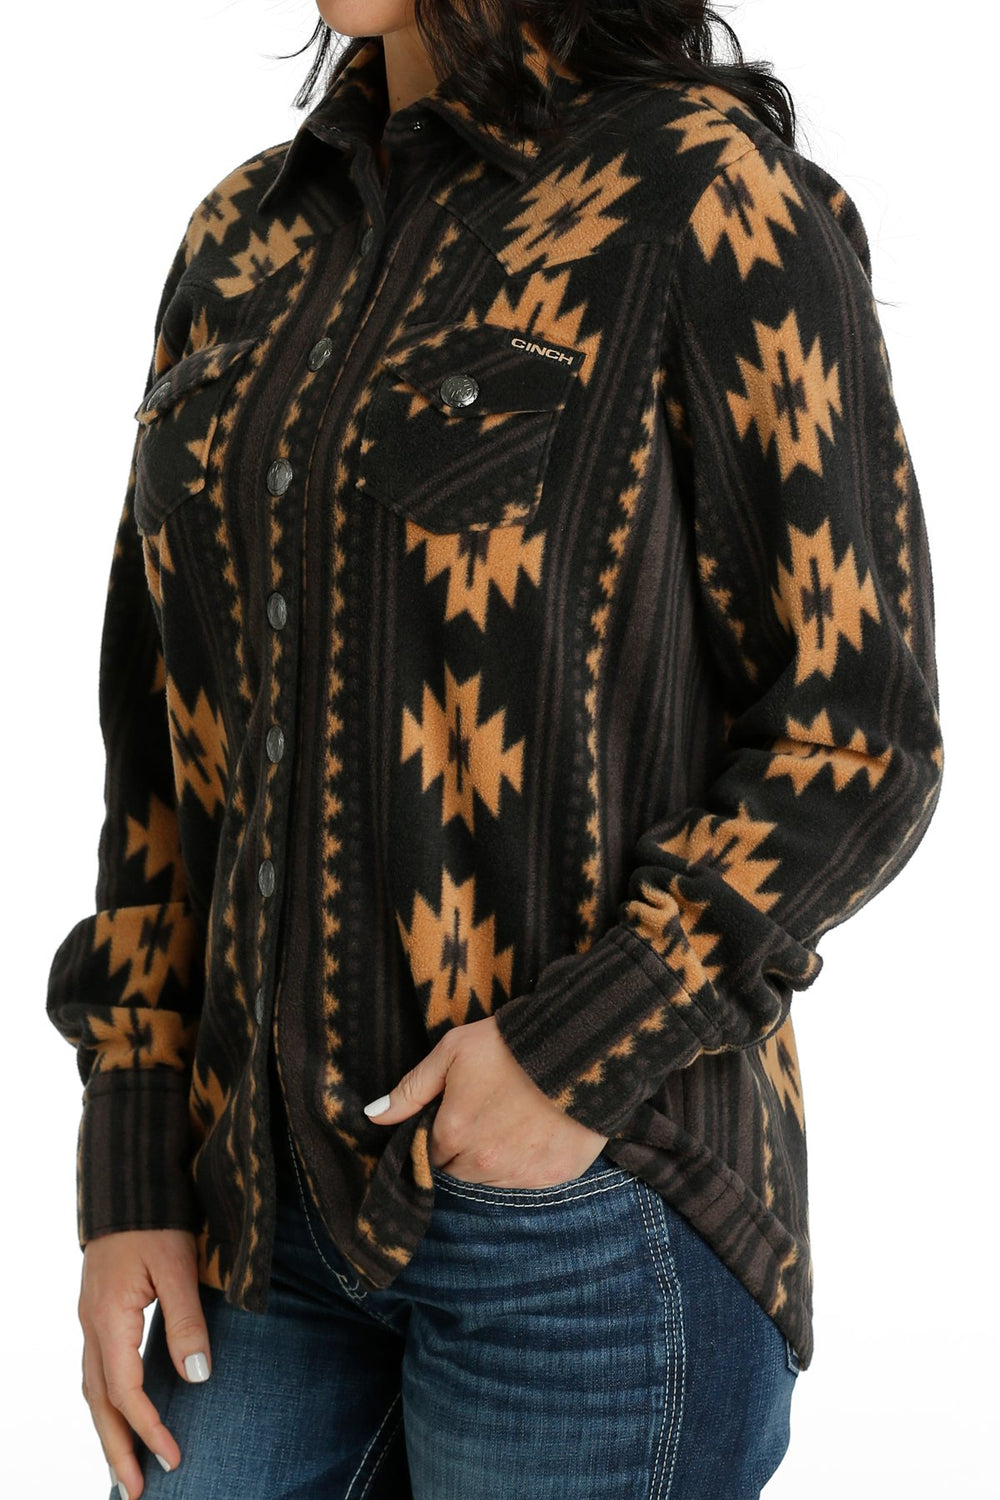 Cinch - Womens Fleece Shirt Jacket